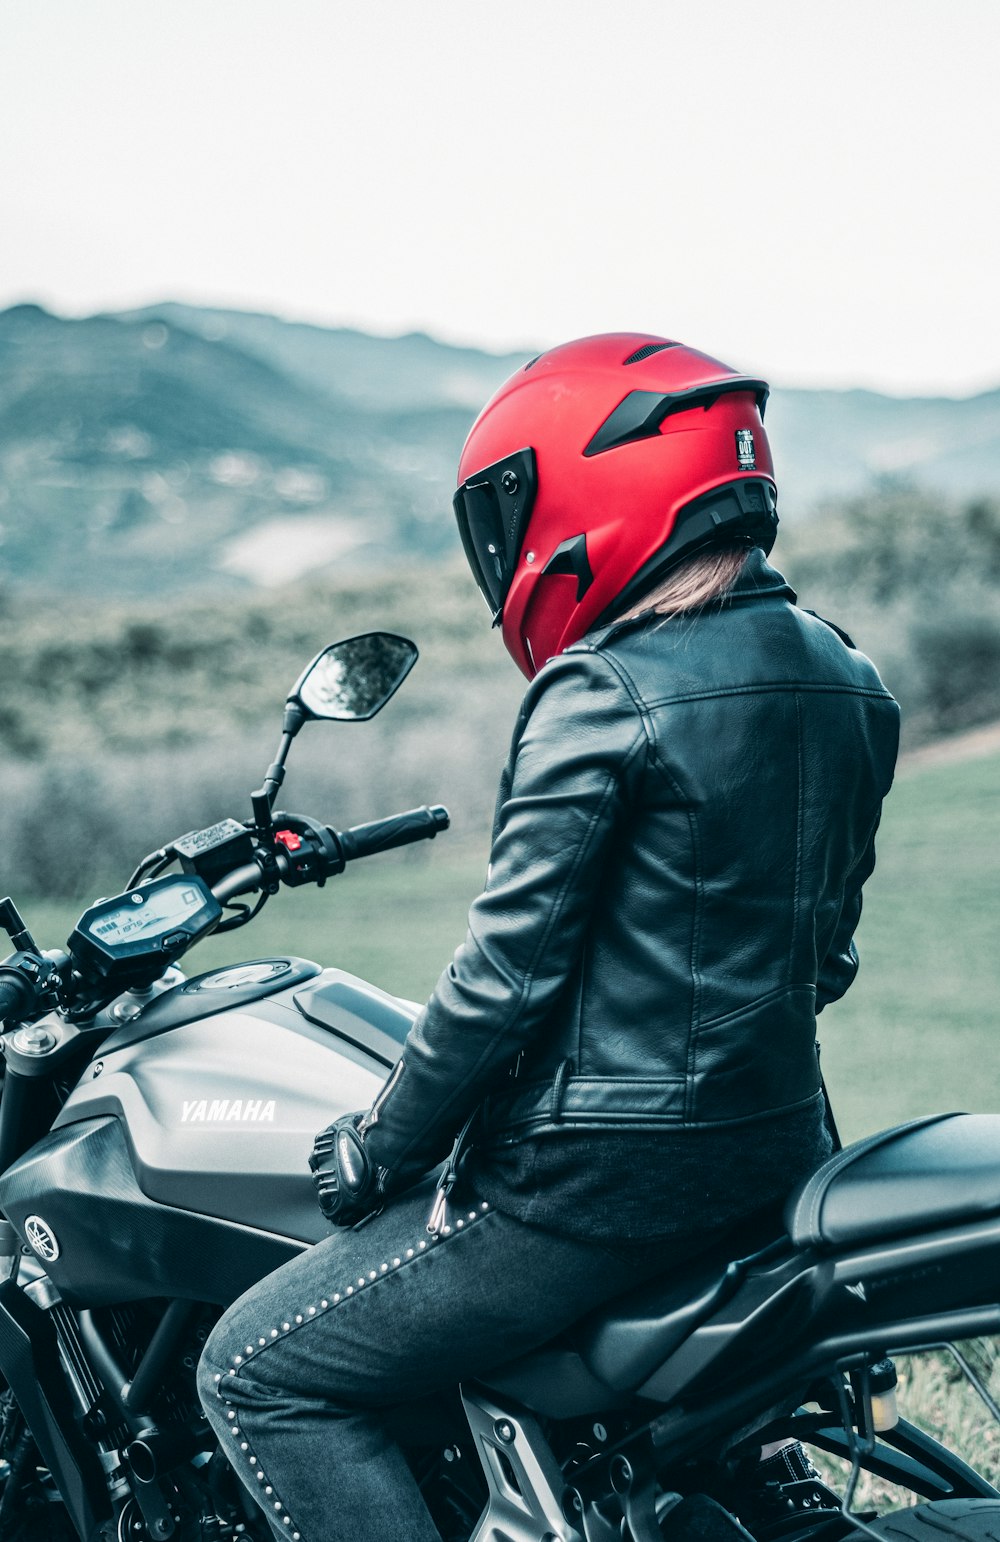 Homme en veste en cuir noir portant un casque rouge conduisant une moto Honda noire